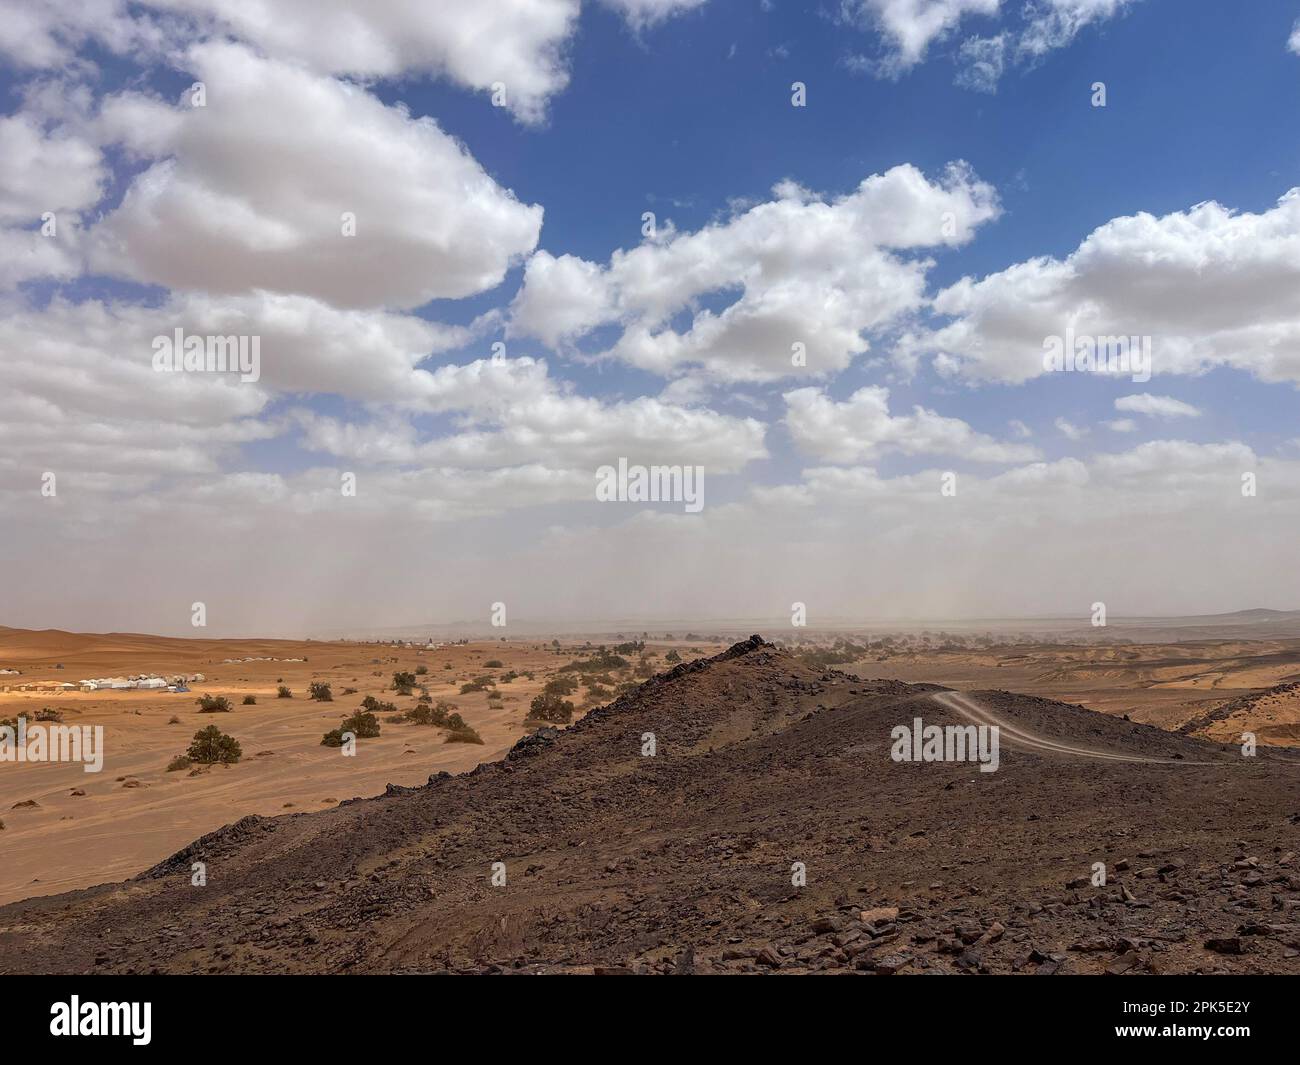 Merzouga, Marokko, Afrika: Panoramastraße in der Sahara mit wunderschönen Sanddünen, Palmen und Zeltlagern, Geländewagen-Fahrt, Erg Chebbi Dünen Stockfoto